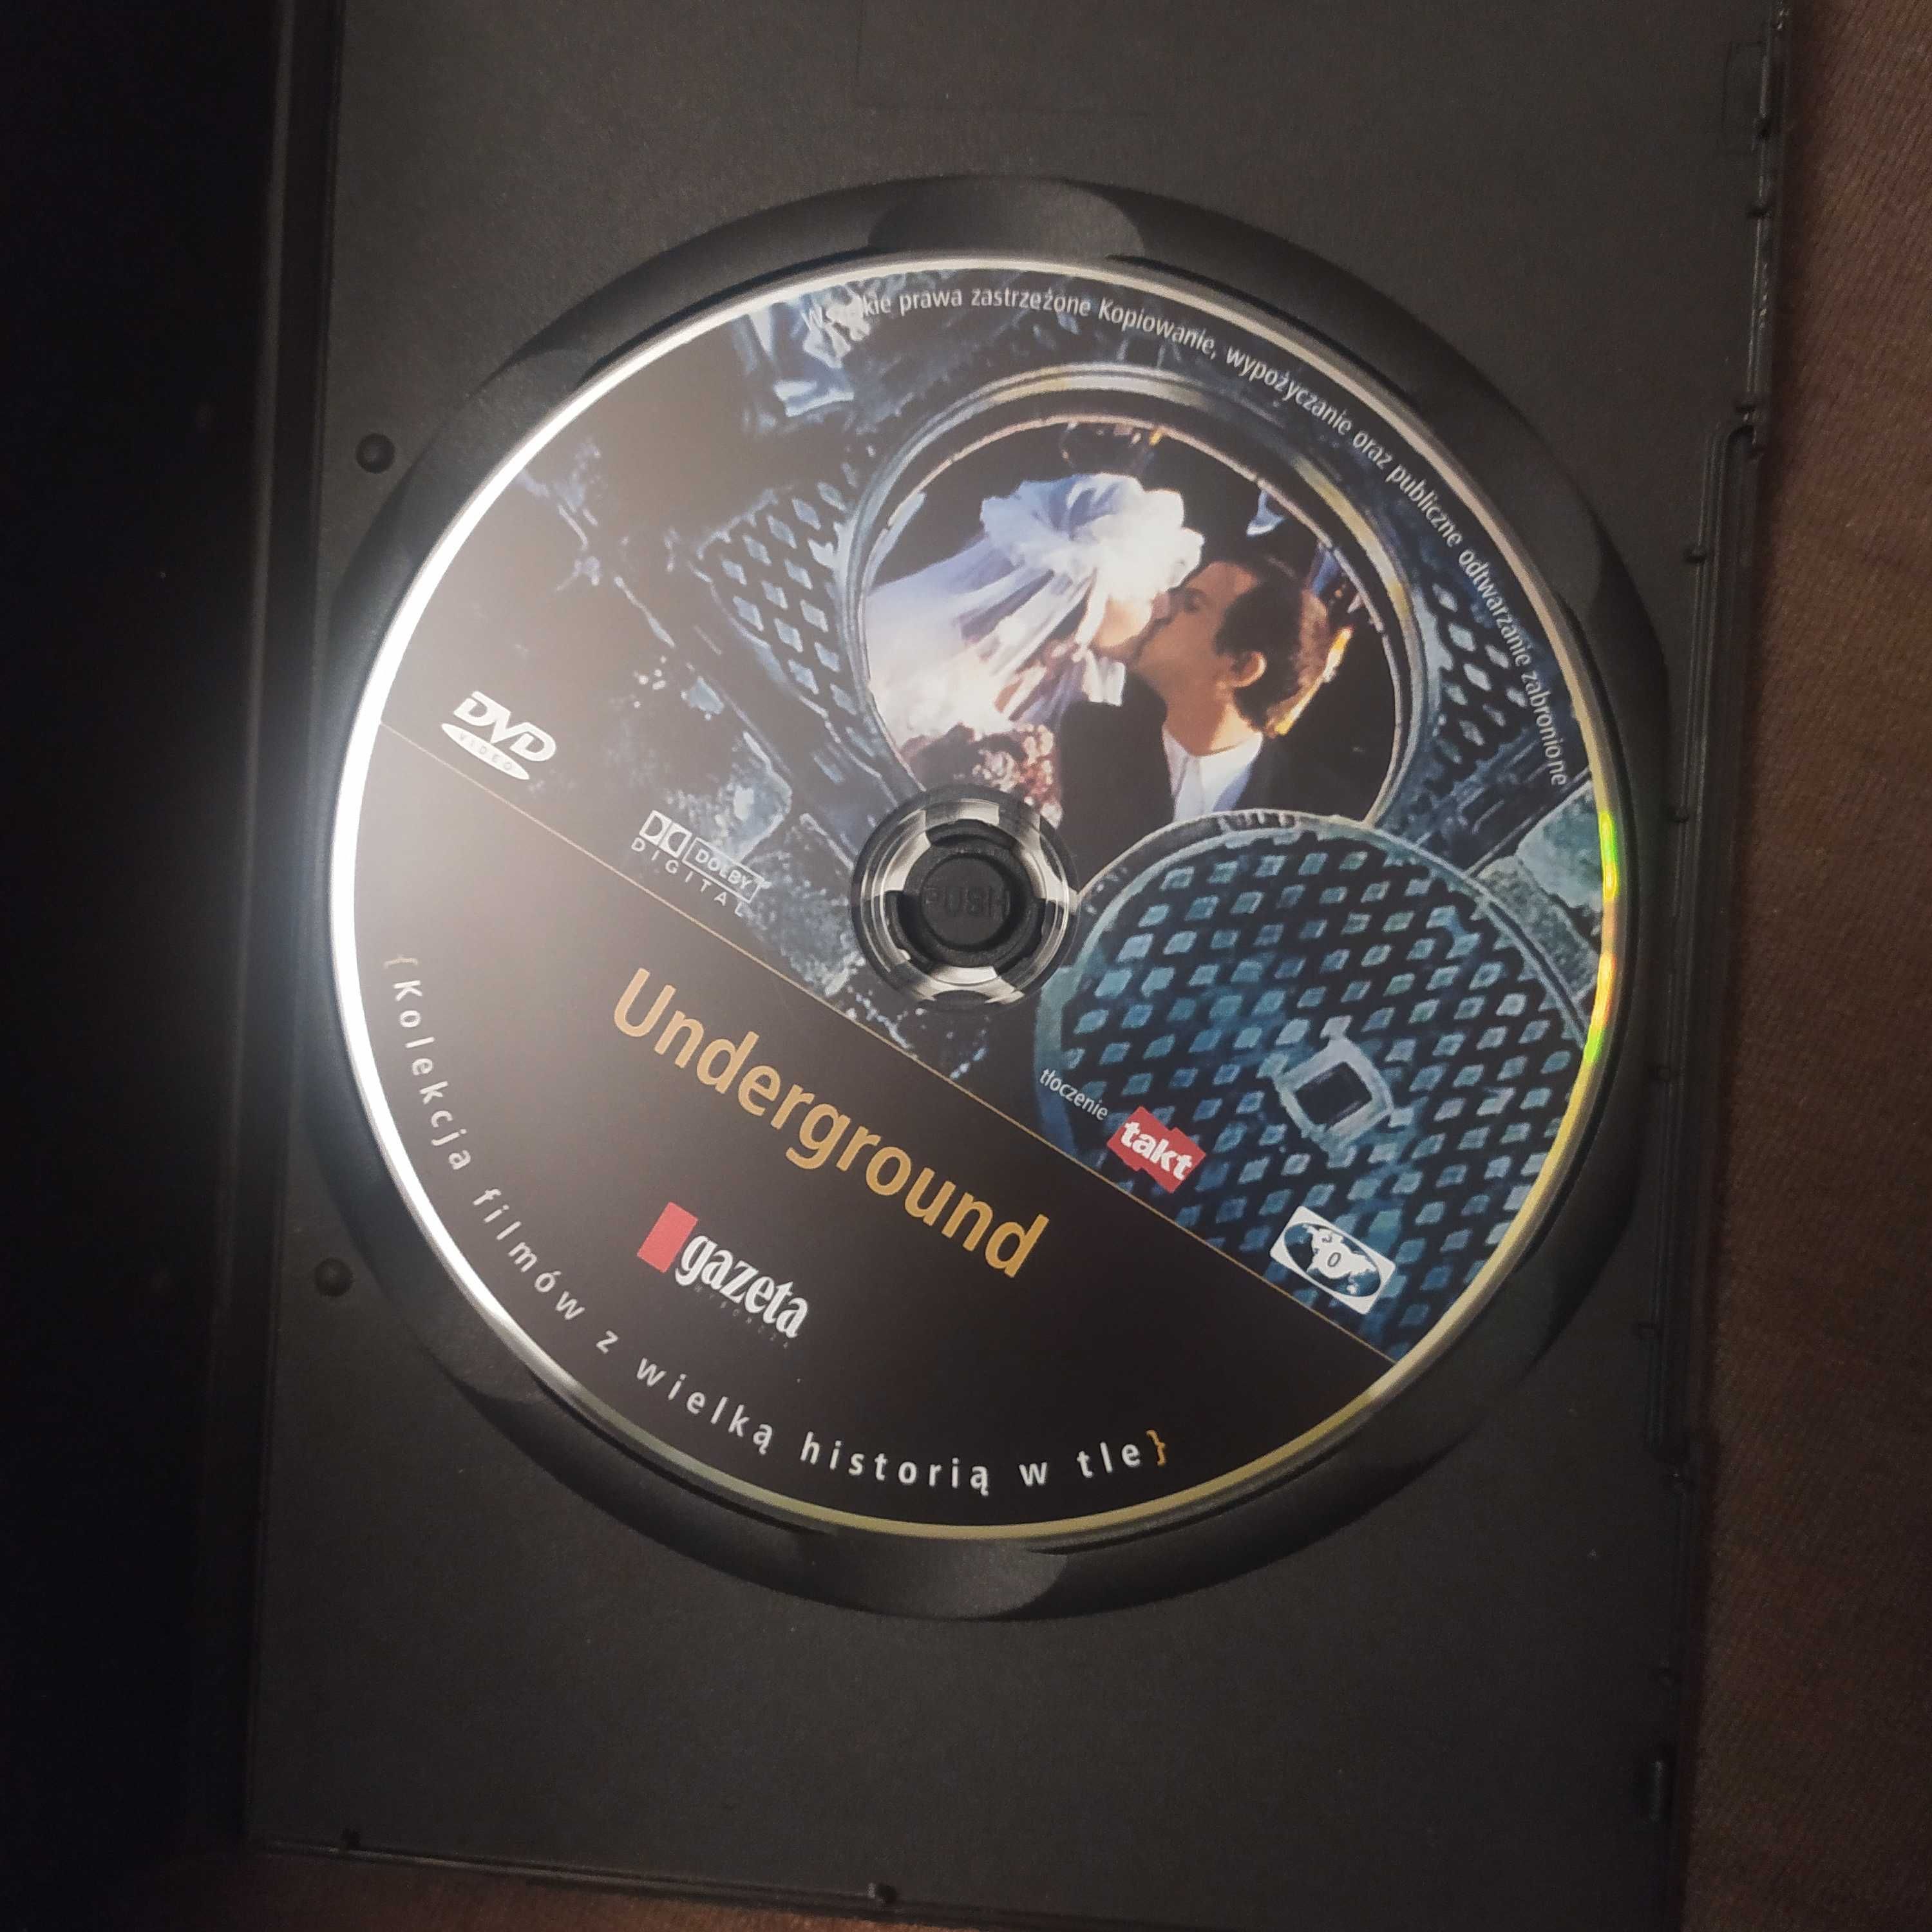 Underground - film DVD